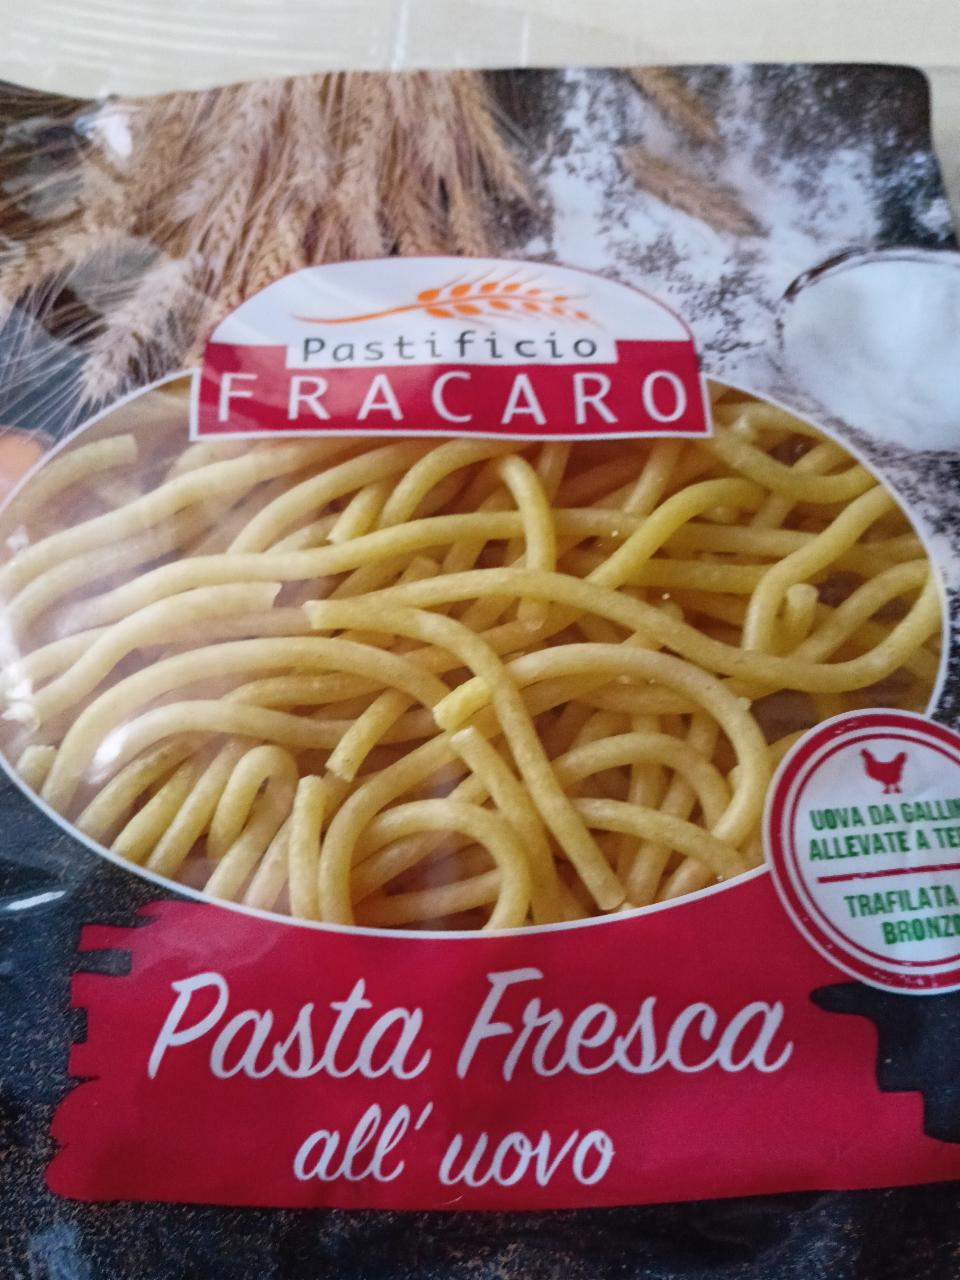 Fotografie - Pasta Fresca all'uovo Pastificio Fracaro